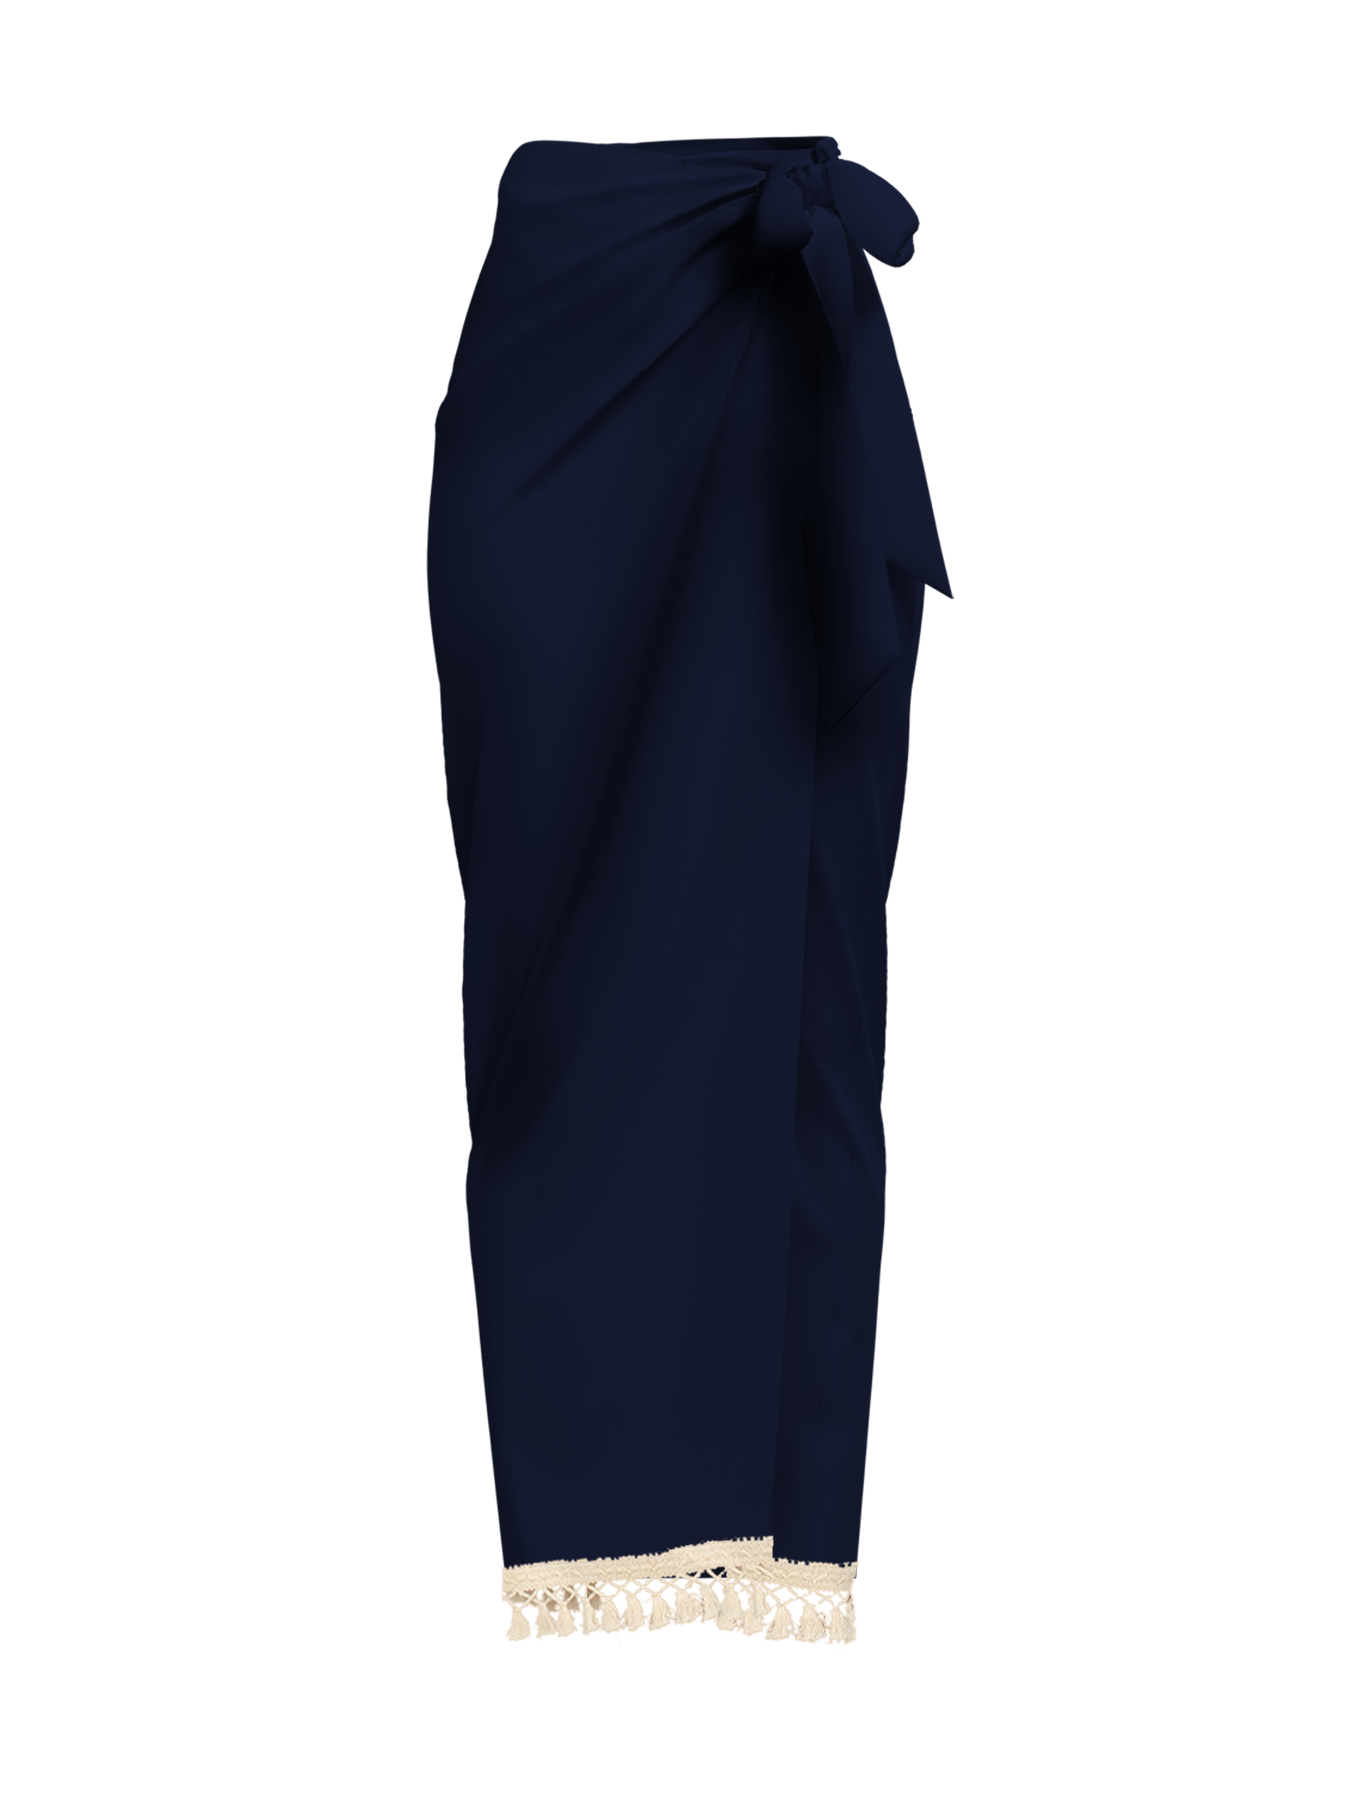 Afia Skirt - Solid Navy